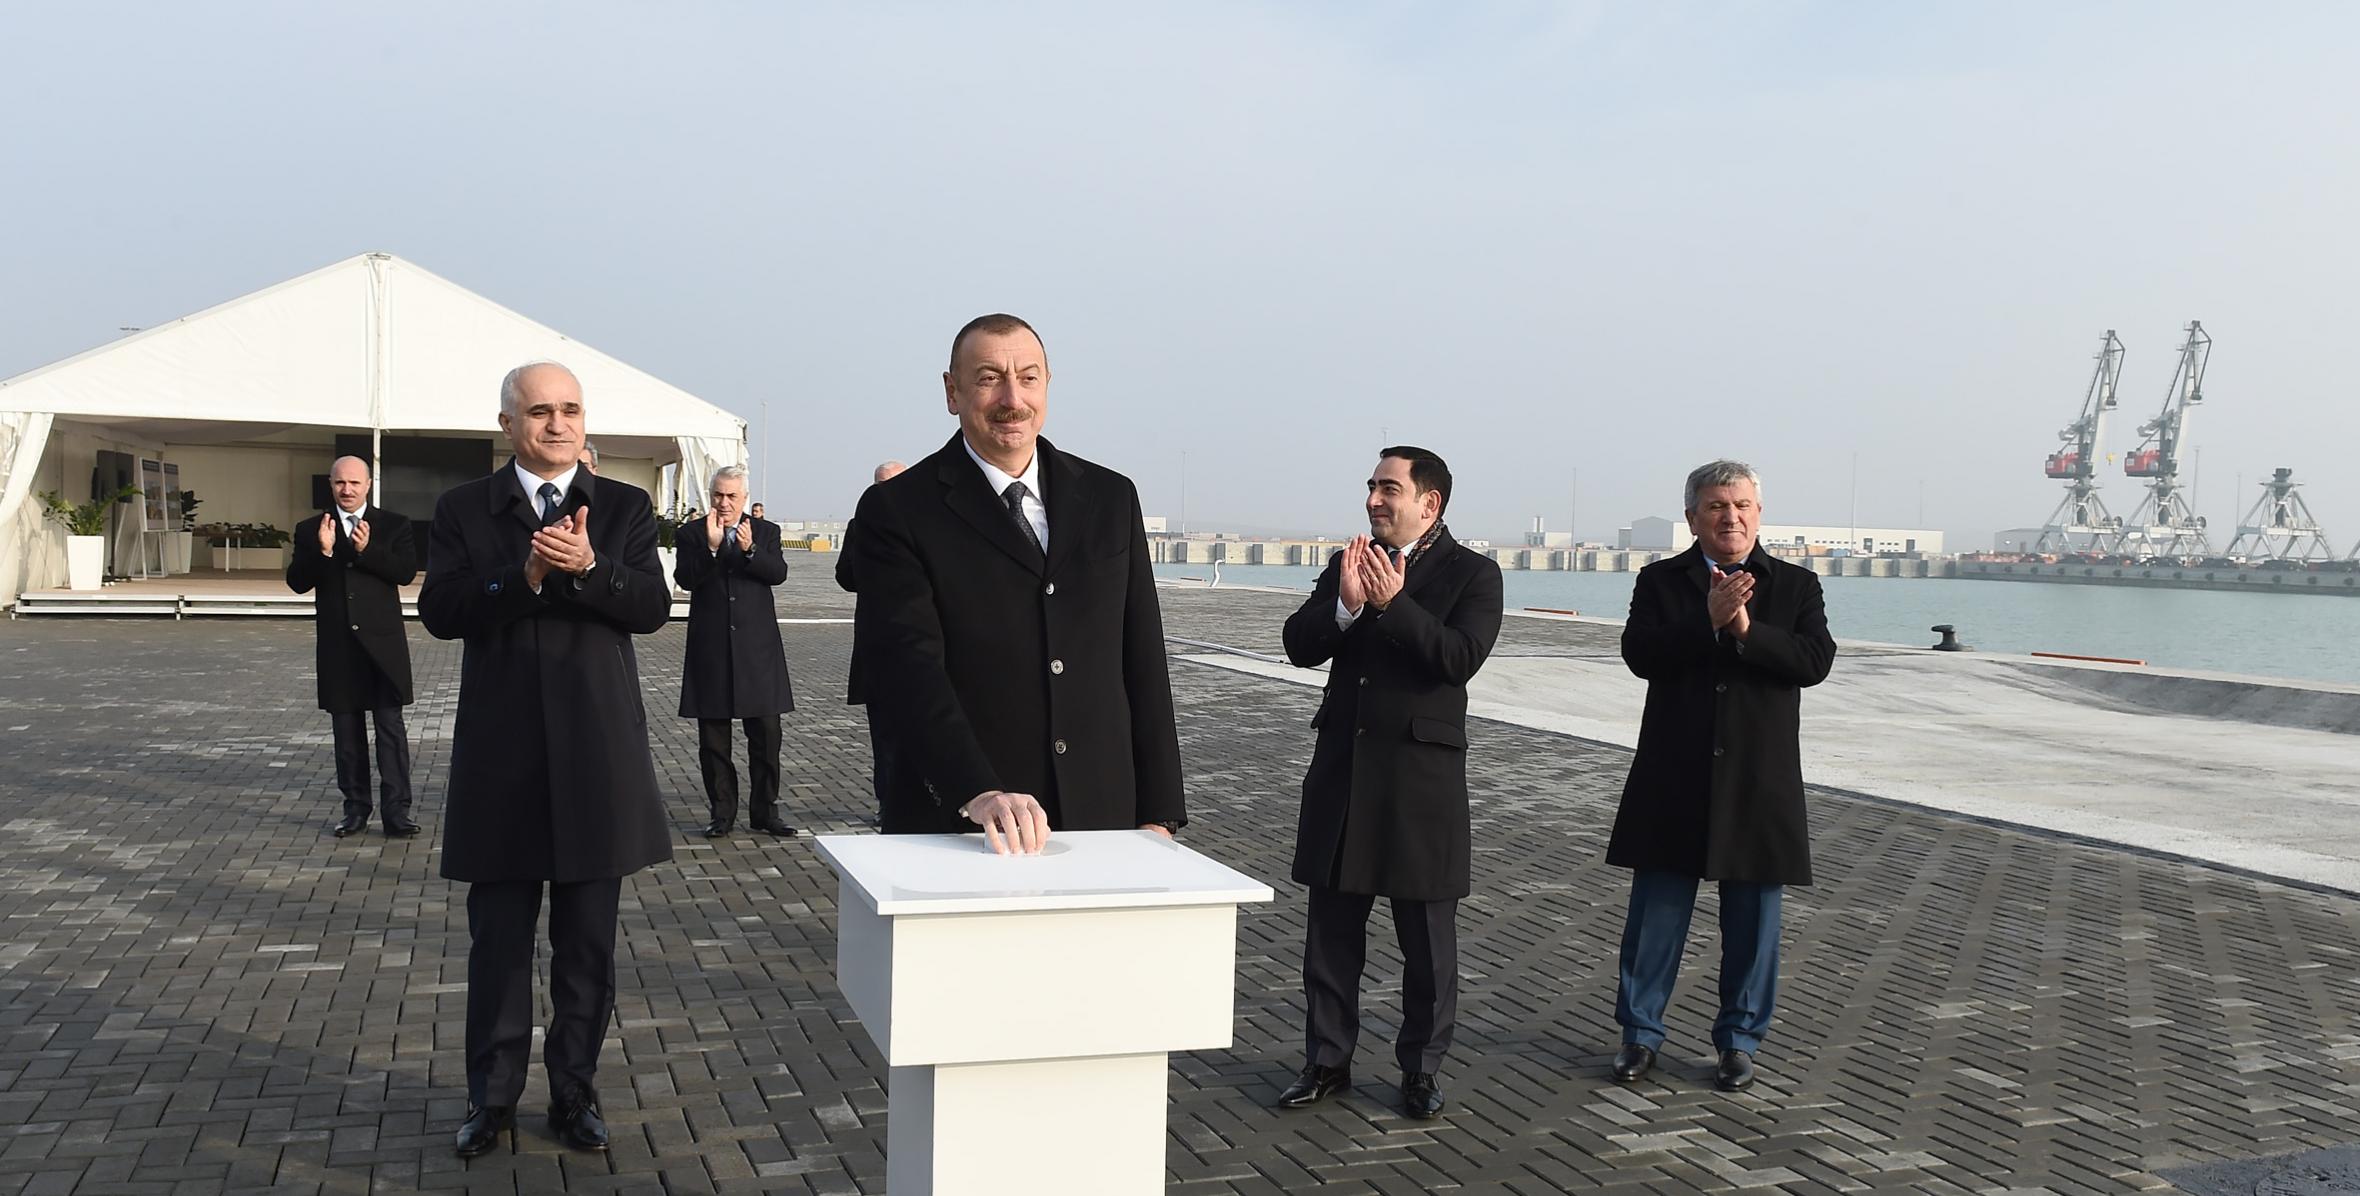 İlham Əliyev Bakı Beynəlxalq Dəniz Ticarət Limanı kompleksində RO-RO terminalının açılışında iştirak edib